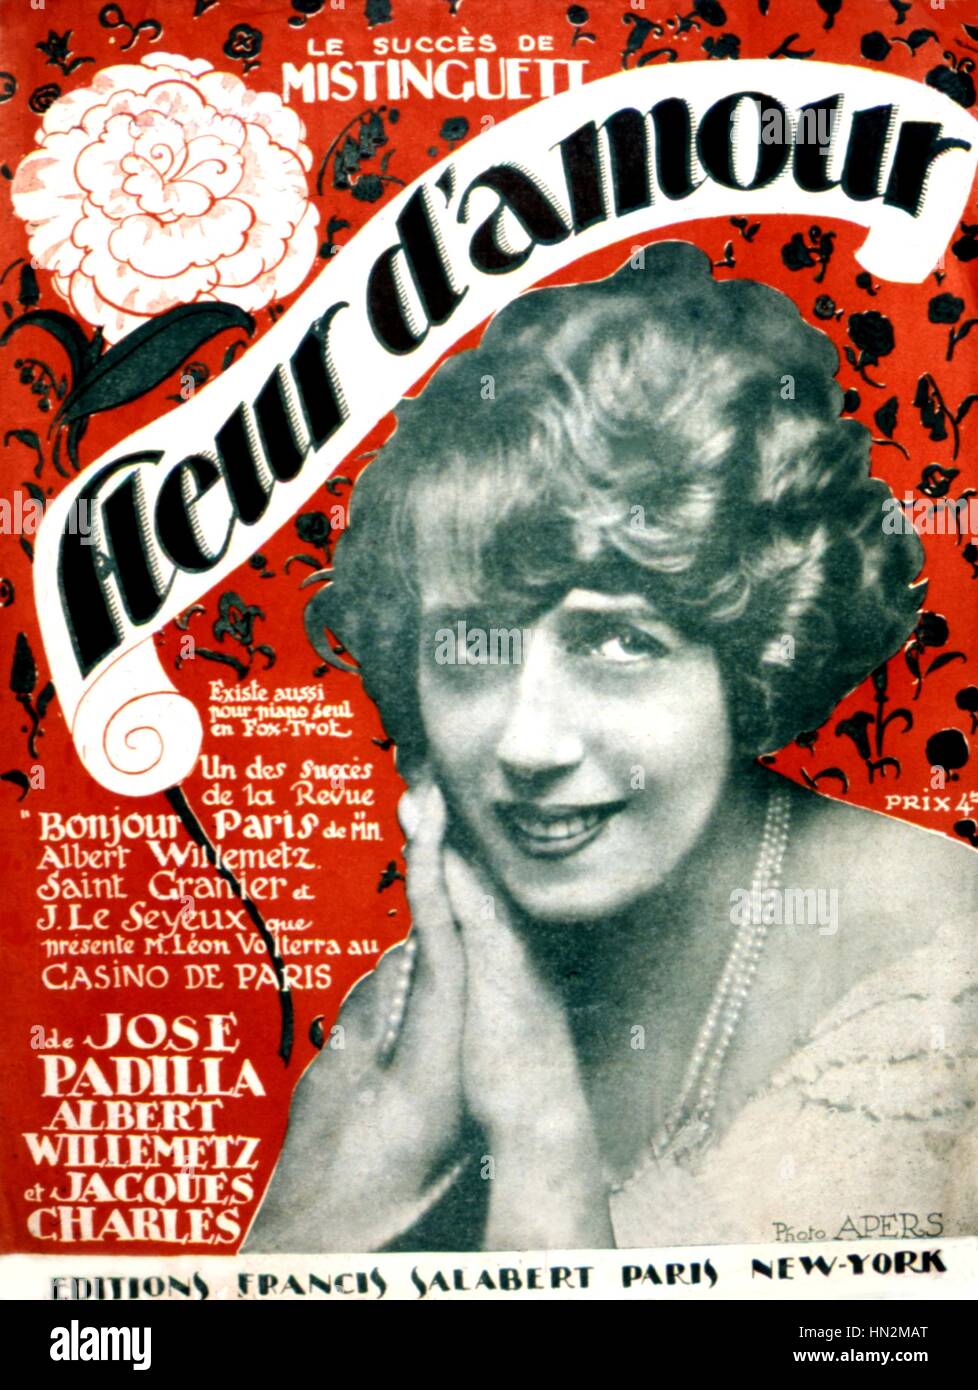 Couverture de l'édition musicale d'une chanson de Mistinguett : 'Fleur d'amour' (fleur de l'amour) France 1923 Banque D'Images